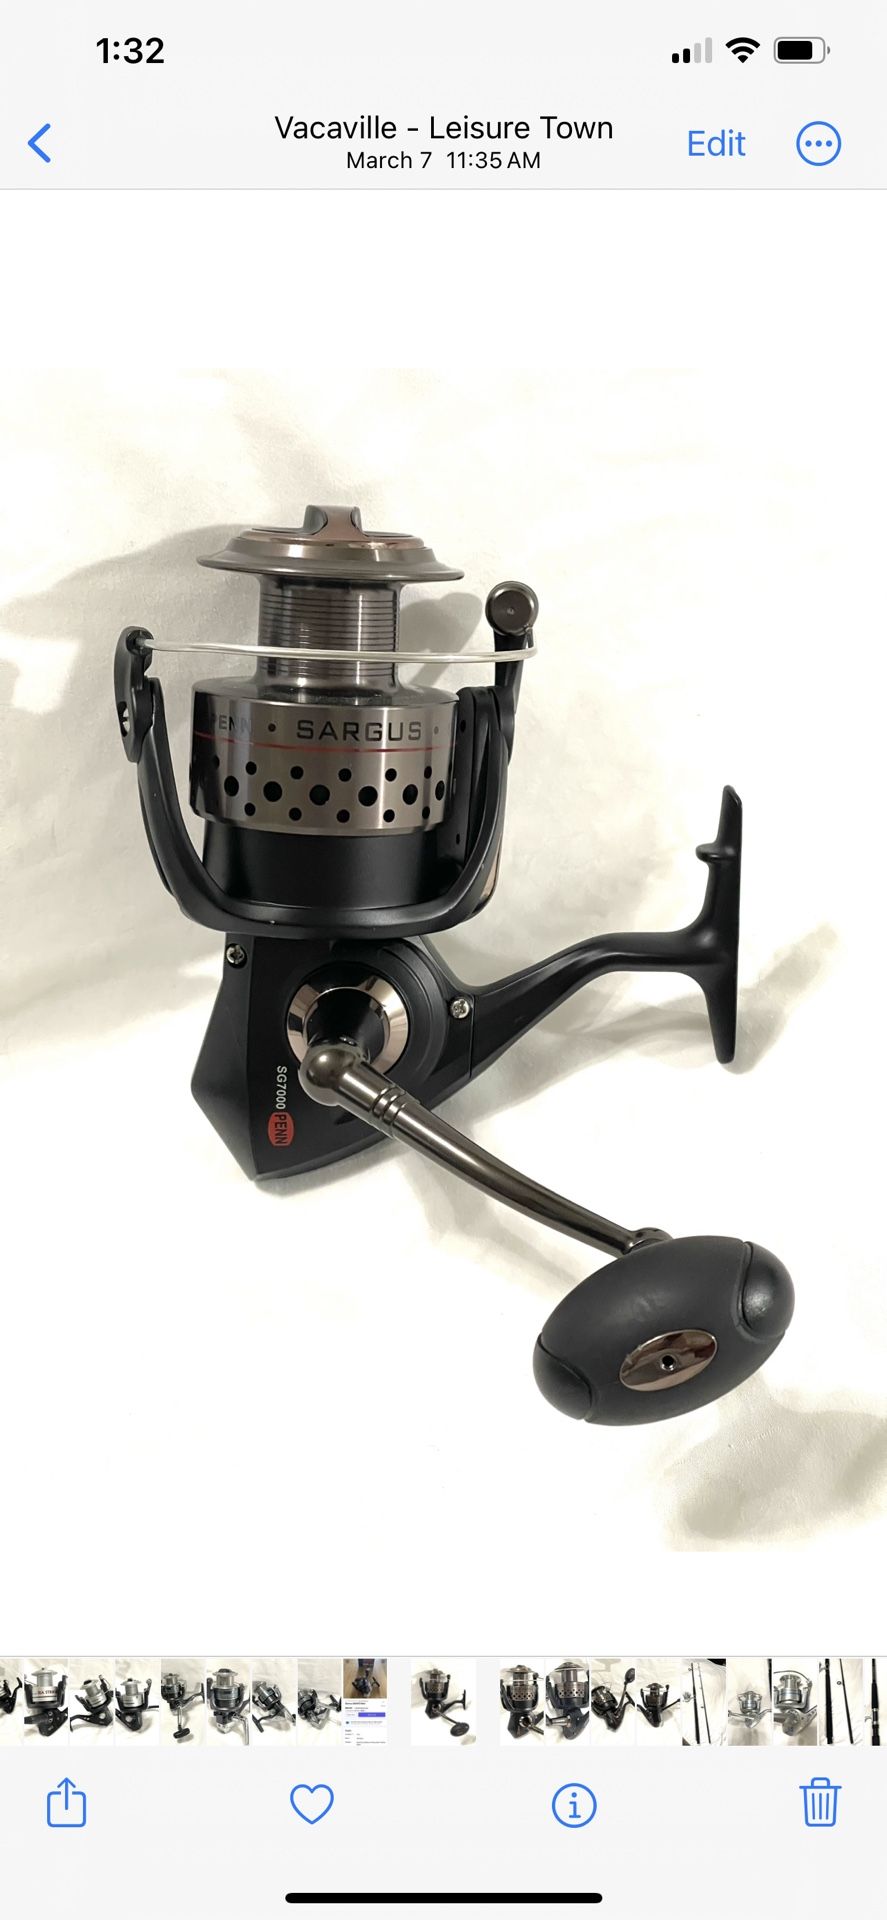 New Never Used Penn Sargus SG-7000 saltwater spinner fishing reel